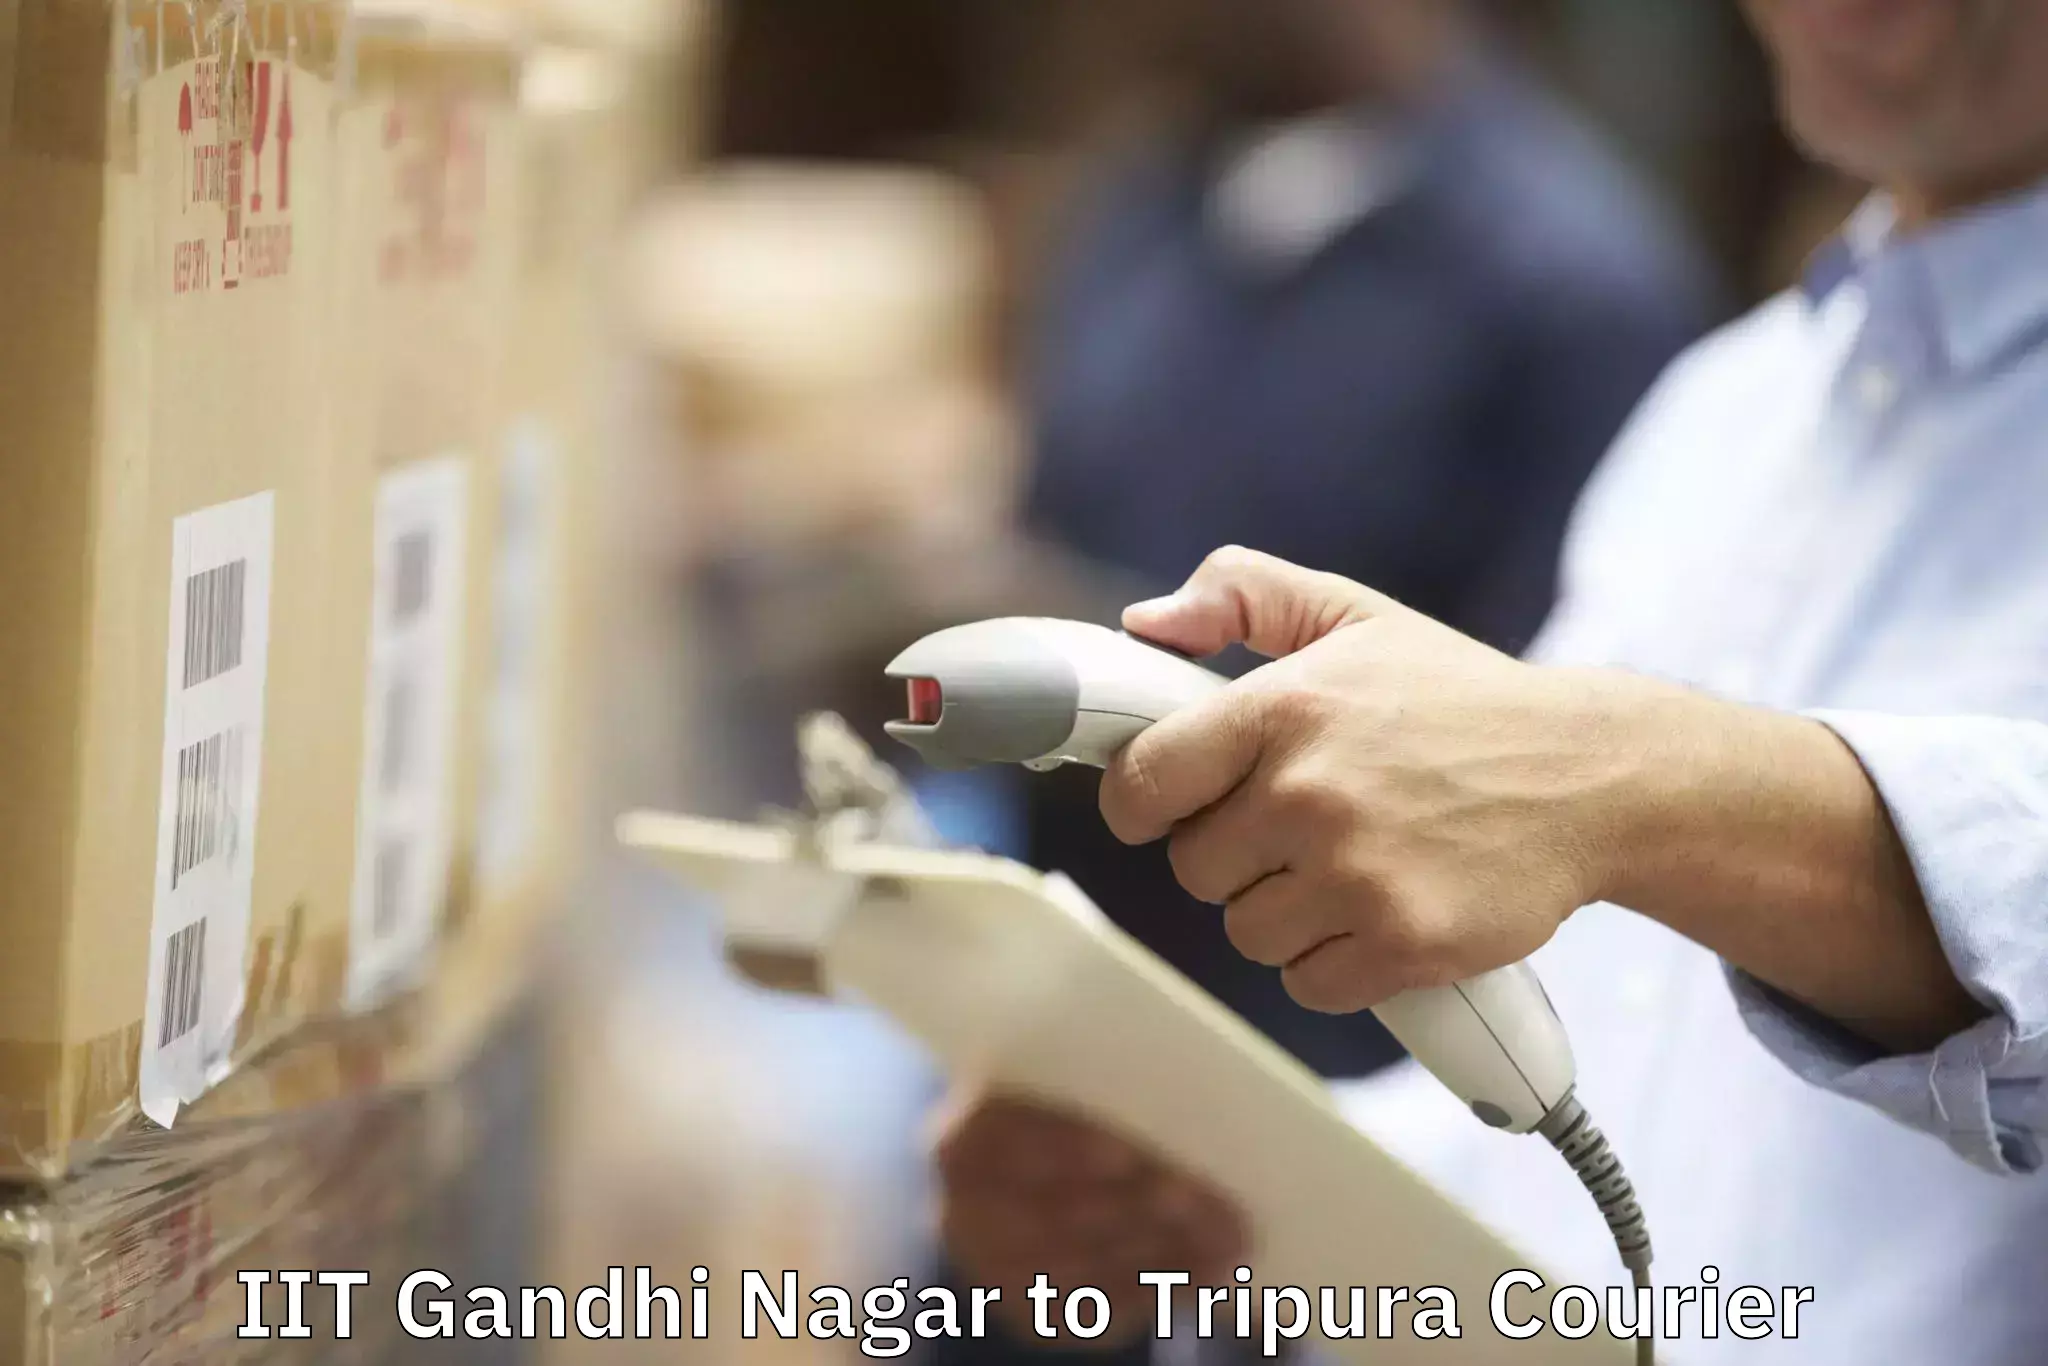 Furniture relocation experts IIT Gandhi Nagar to Aambasa